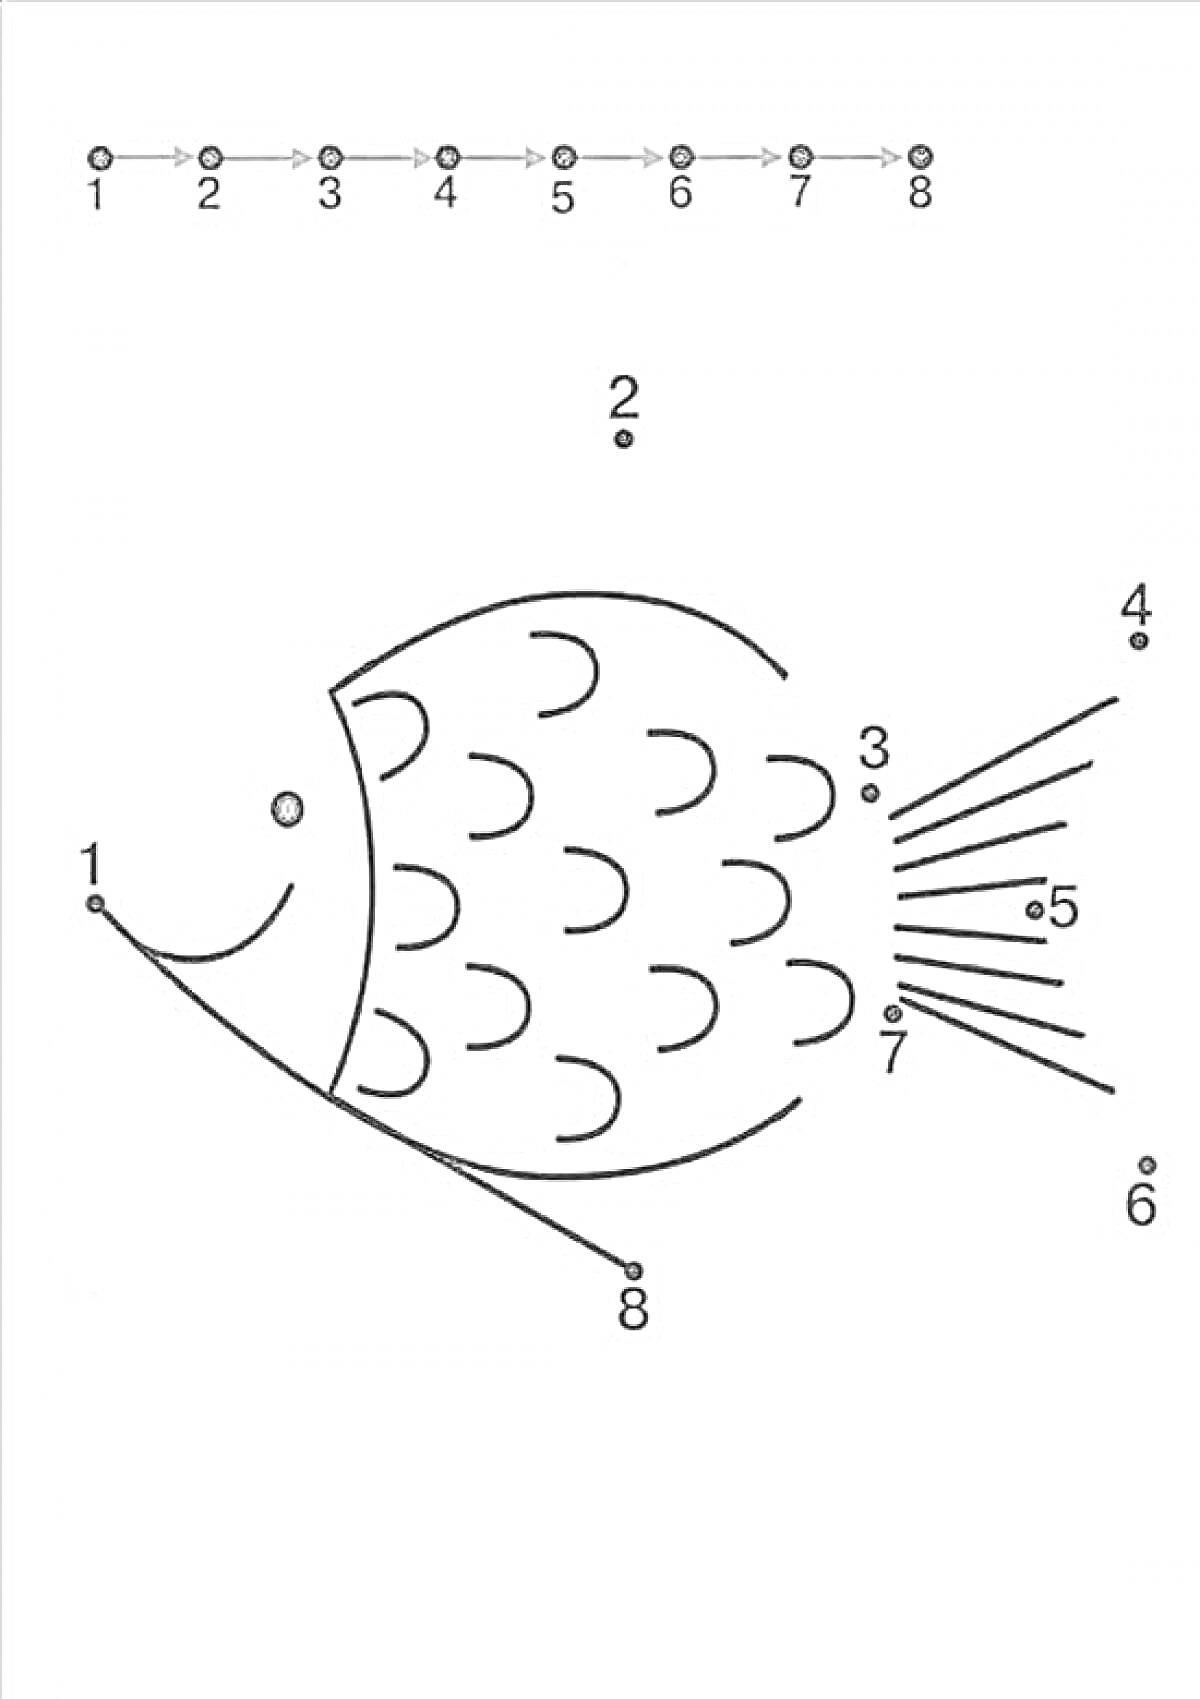 Раскраска Рыбка по точкам и цифрам от 1 до 8